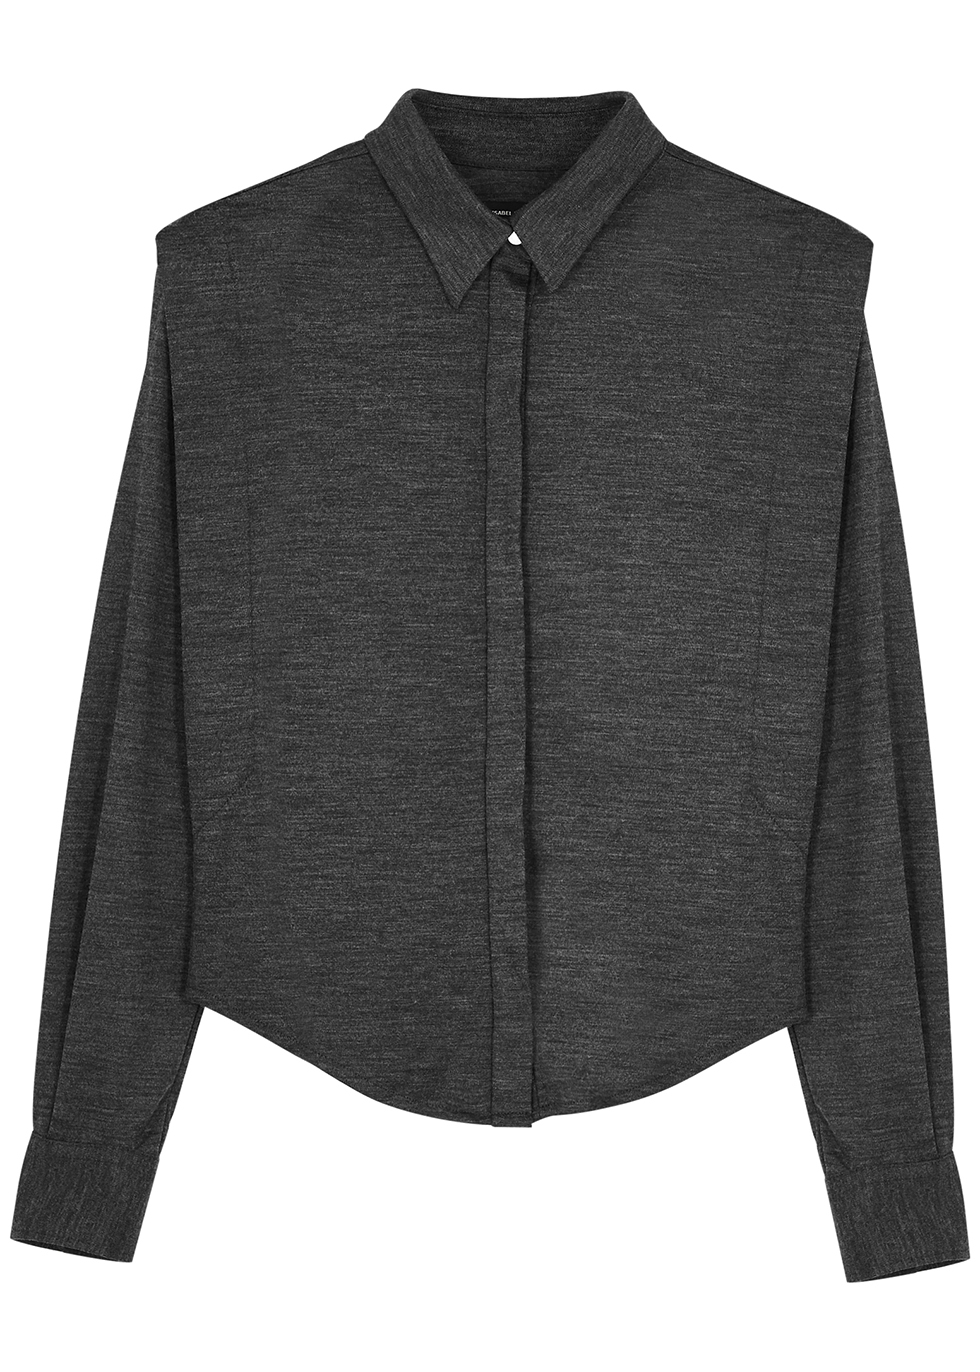 Galki dark grey wool blouse